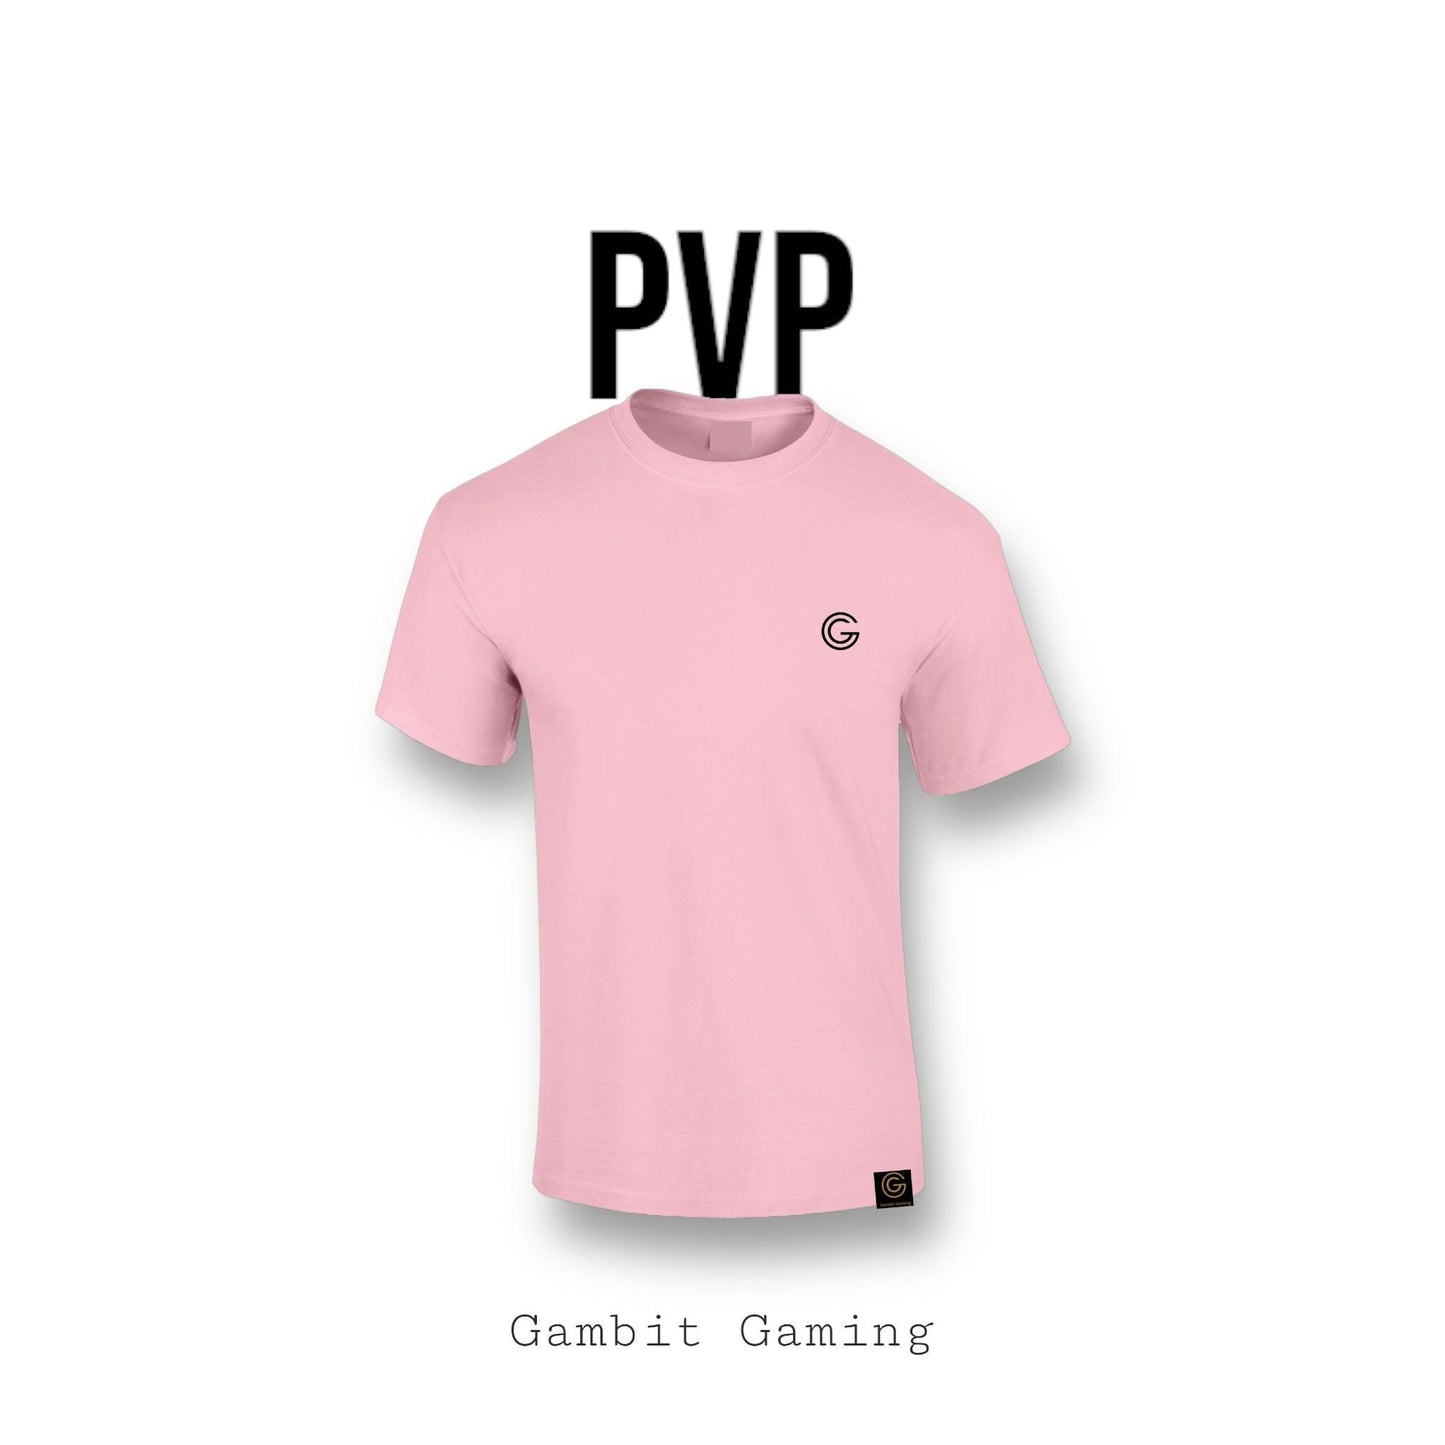 PVP T-shirt - Gambit Gaming